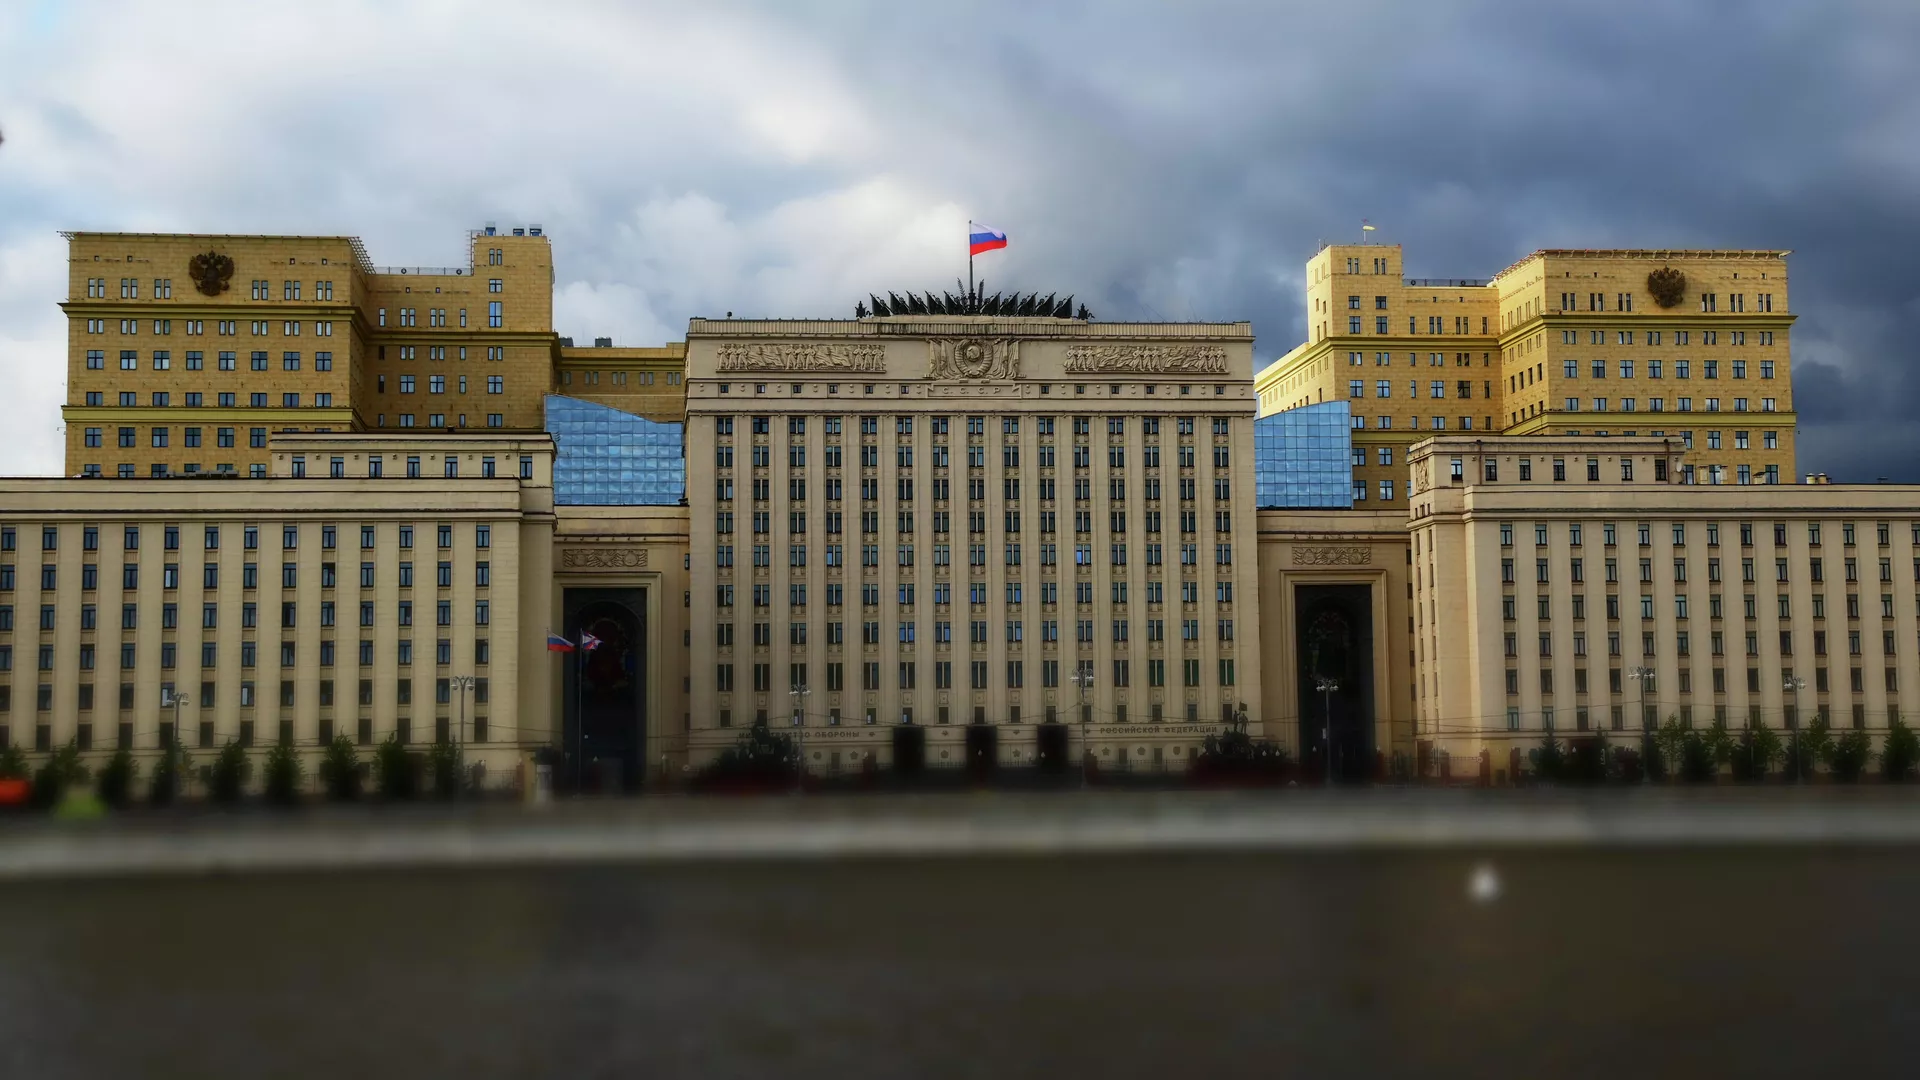 ՌԴ ԶՈւ-ն Խարկովի մերձակայքում 10 դիվերսանտի է գերի վերցրել․ ՌԴ ՊՆ